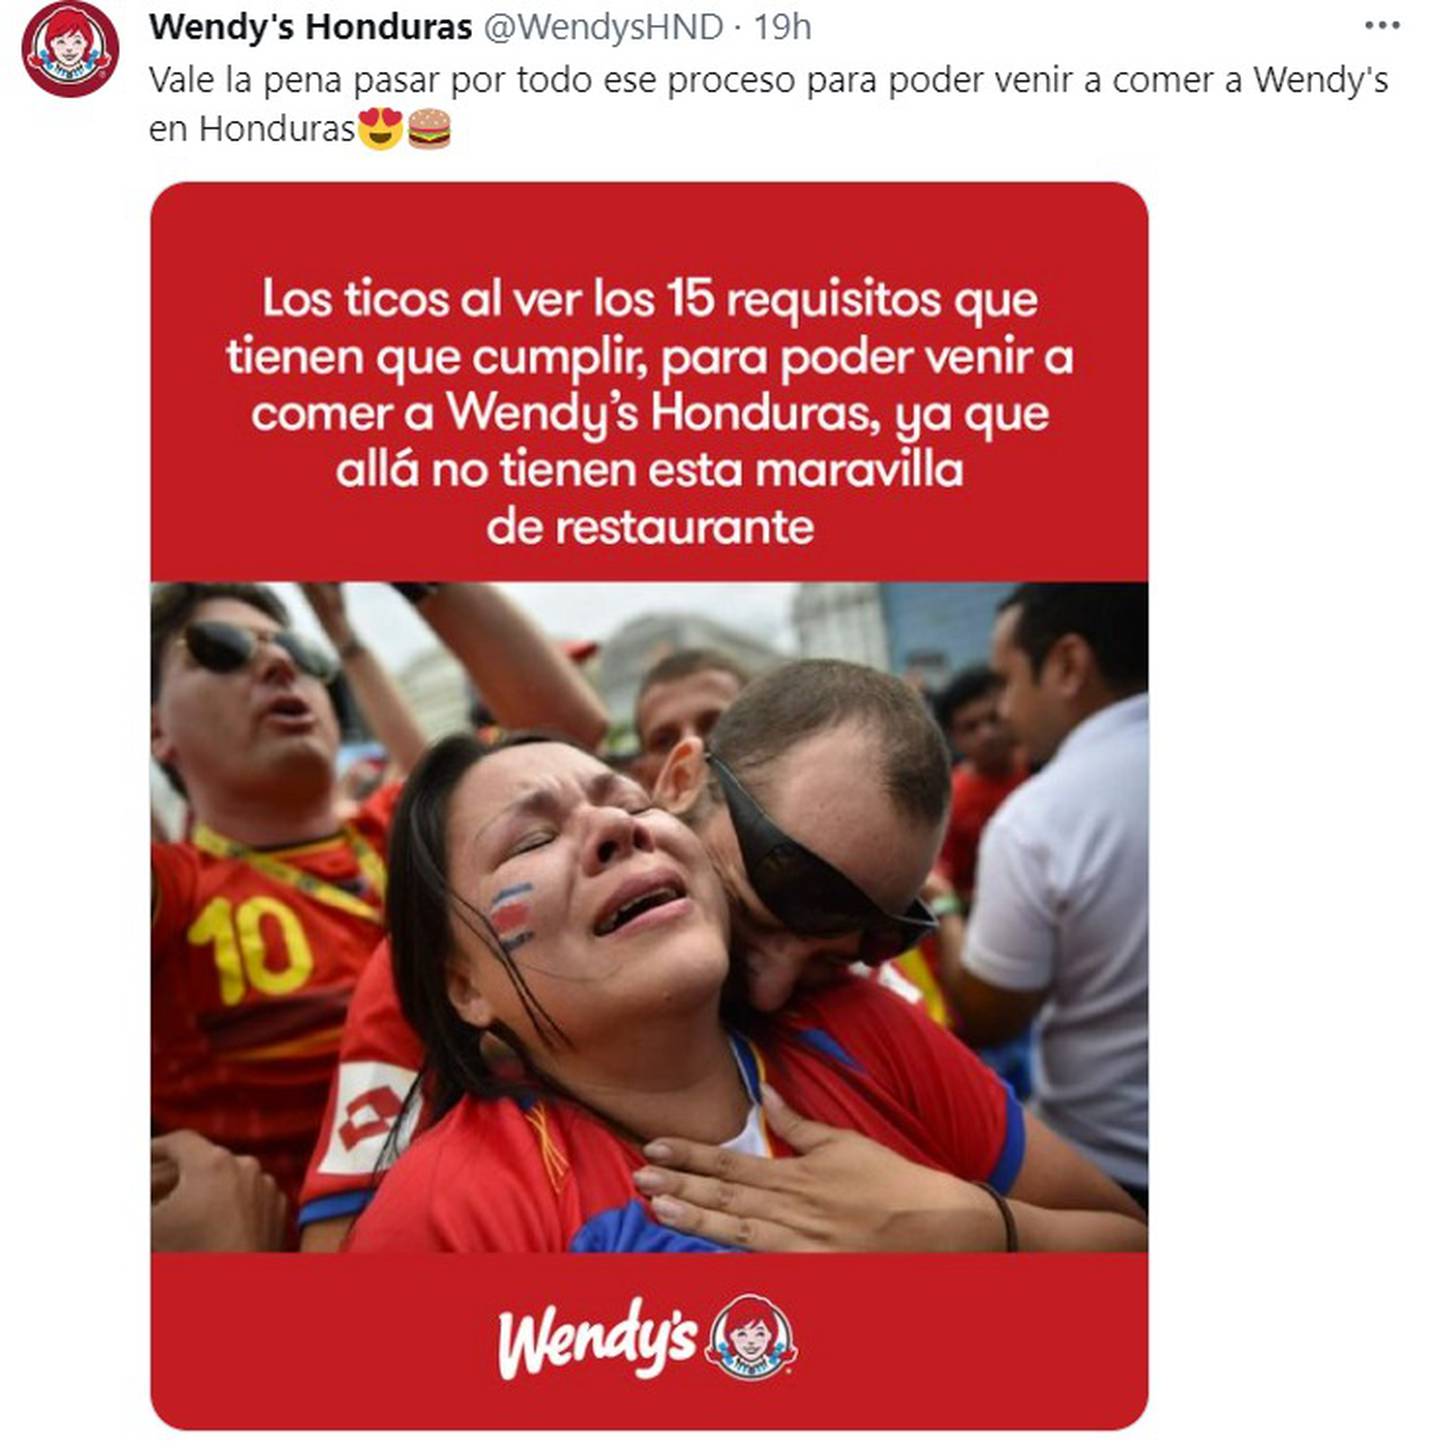 Publicidad del restaurante Wendy's en redes sociales